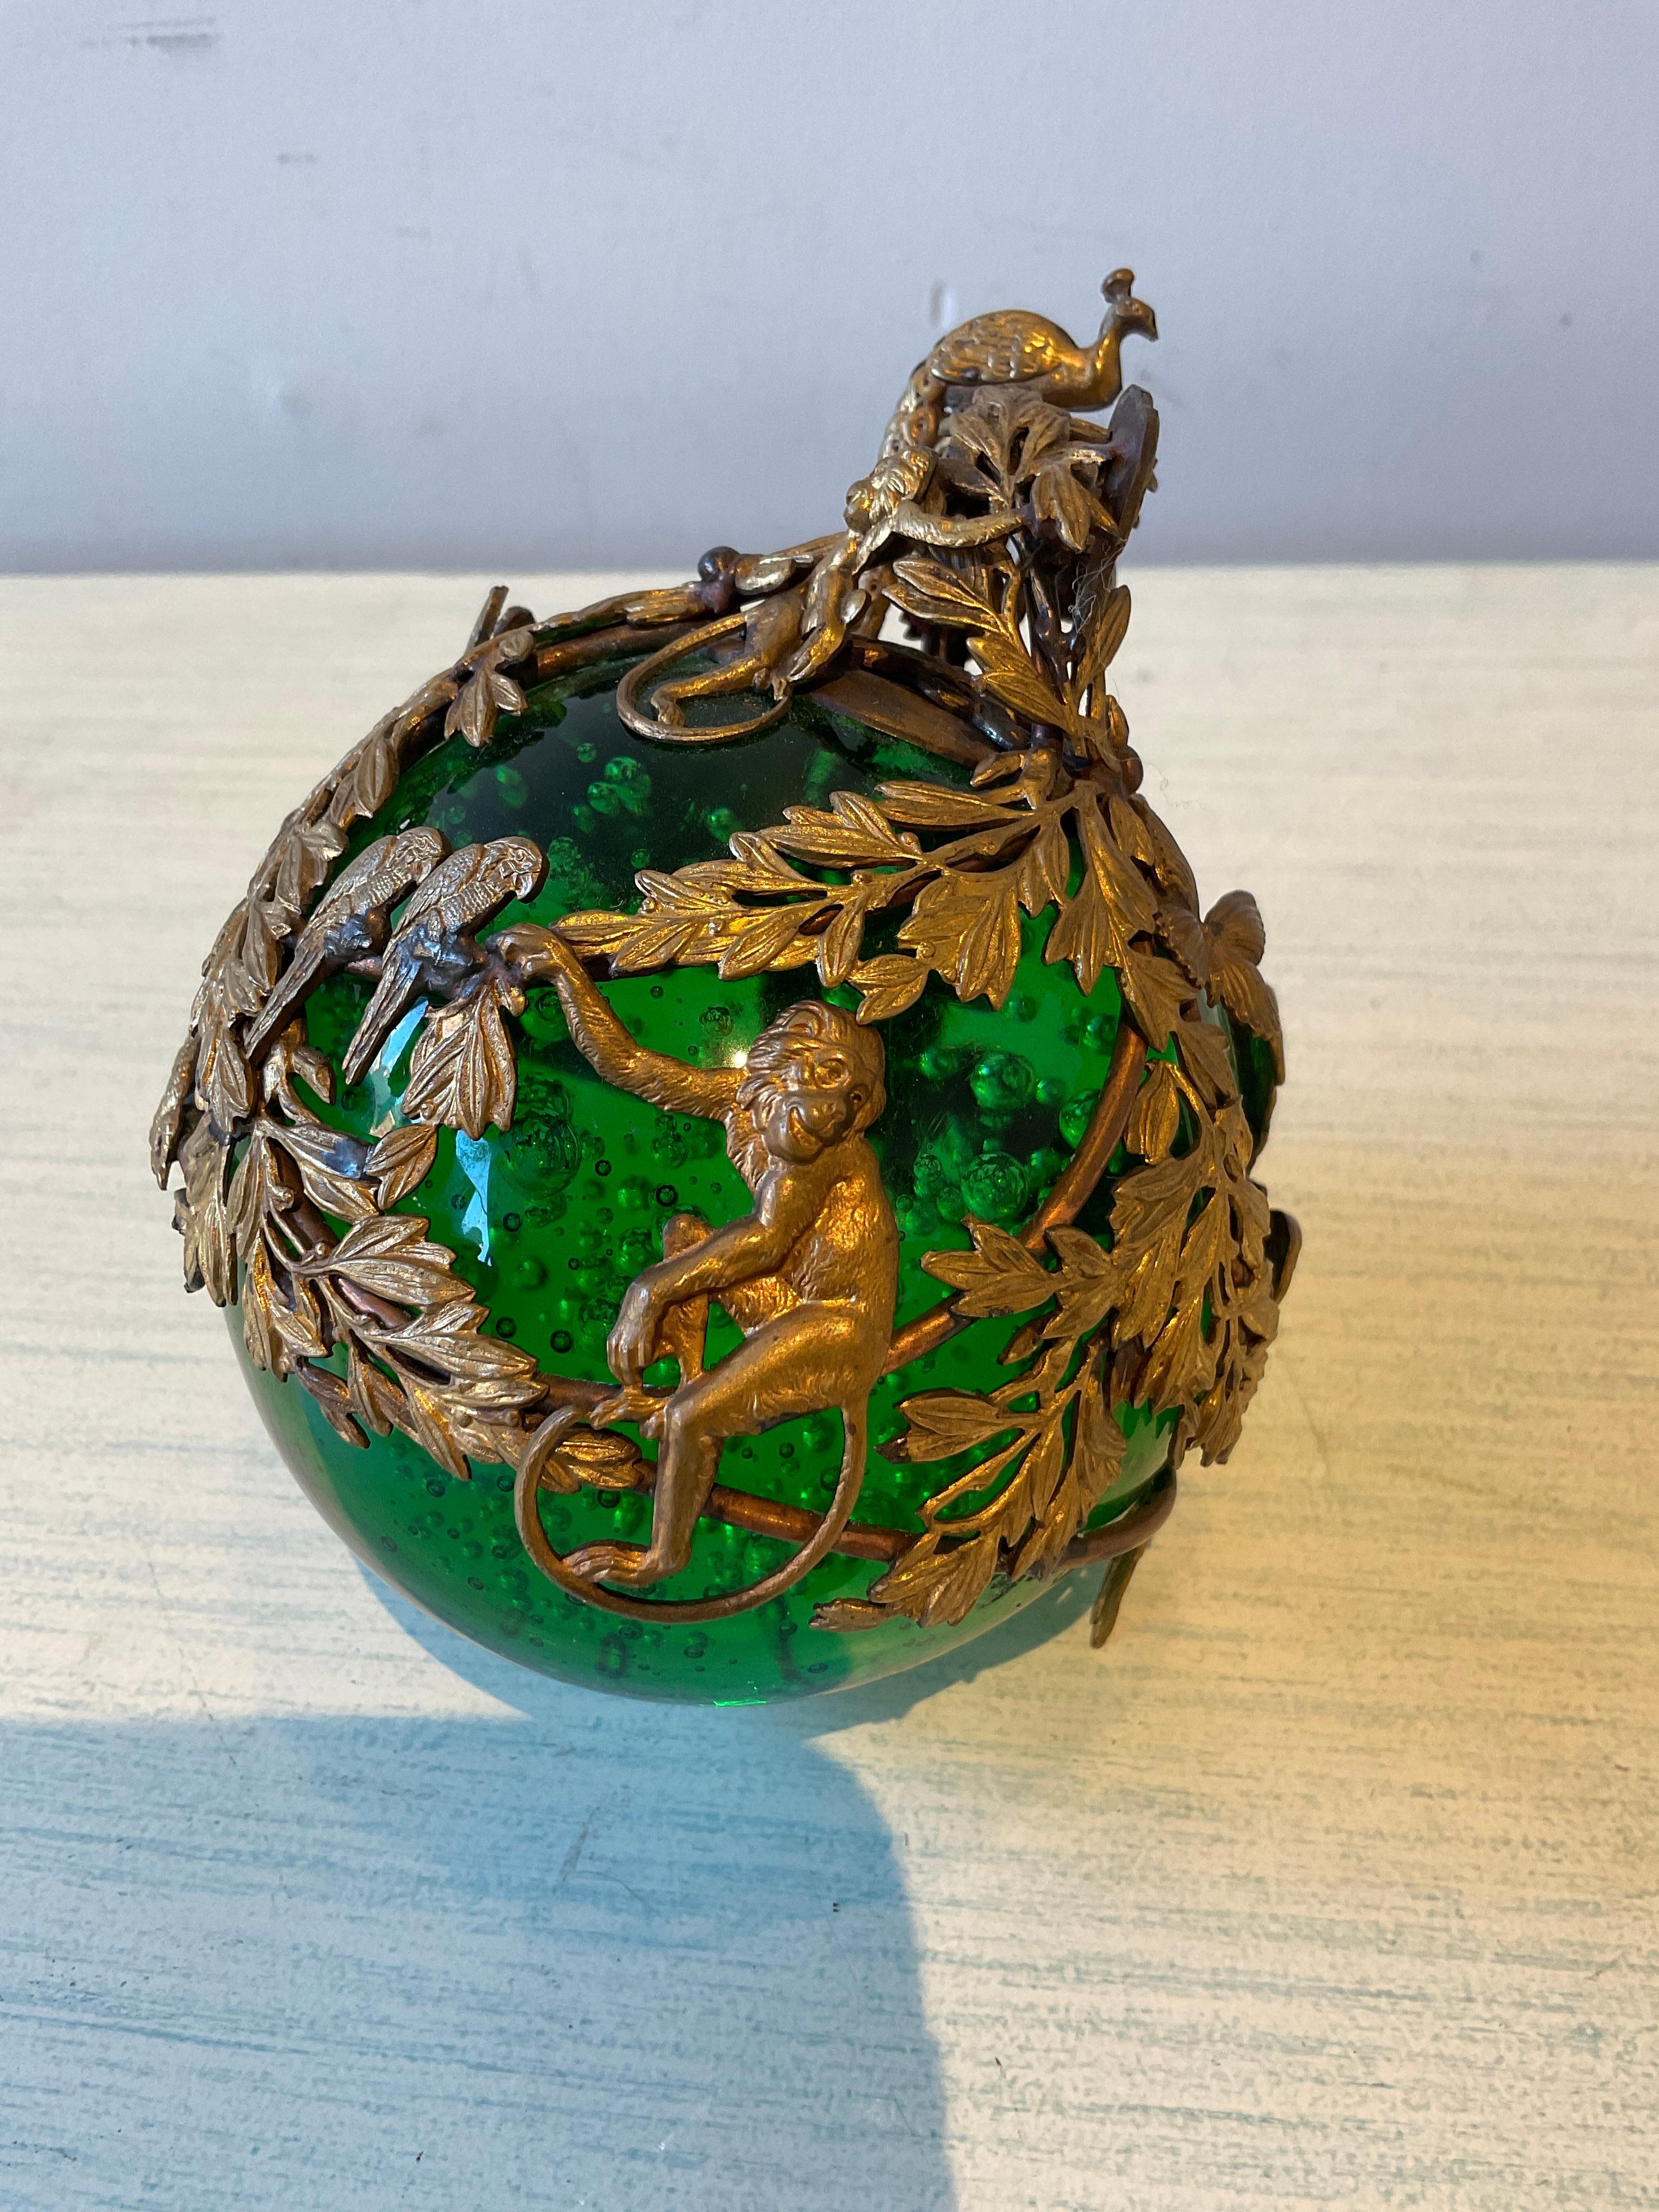 Ornement français de 1910 en verre bullé vert avec bronze doré représentant un singe, un perroquet, un serpent, un paon et un papillon. Il serait parfait sur une base.
Signé, mais la signature n'est pas visible sur la dernière photo.